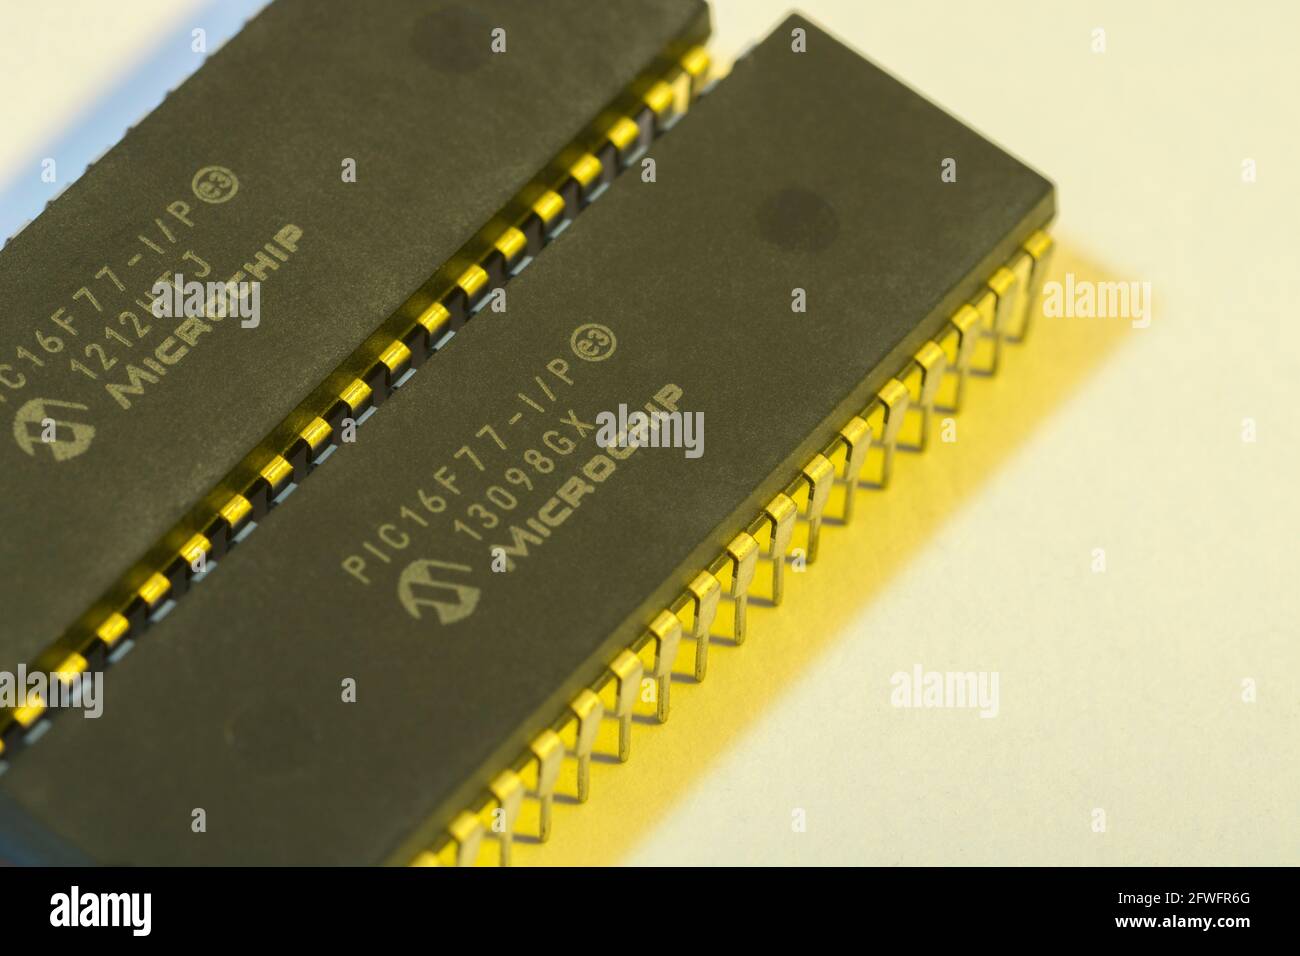 Nahaufnahme des Halbleiters PIC16F77-I/P von Microchip Technology. Für abstrakte Elektronik, abstrakte Industriekomponenten, Mikrochip-Beine. Stockfoto